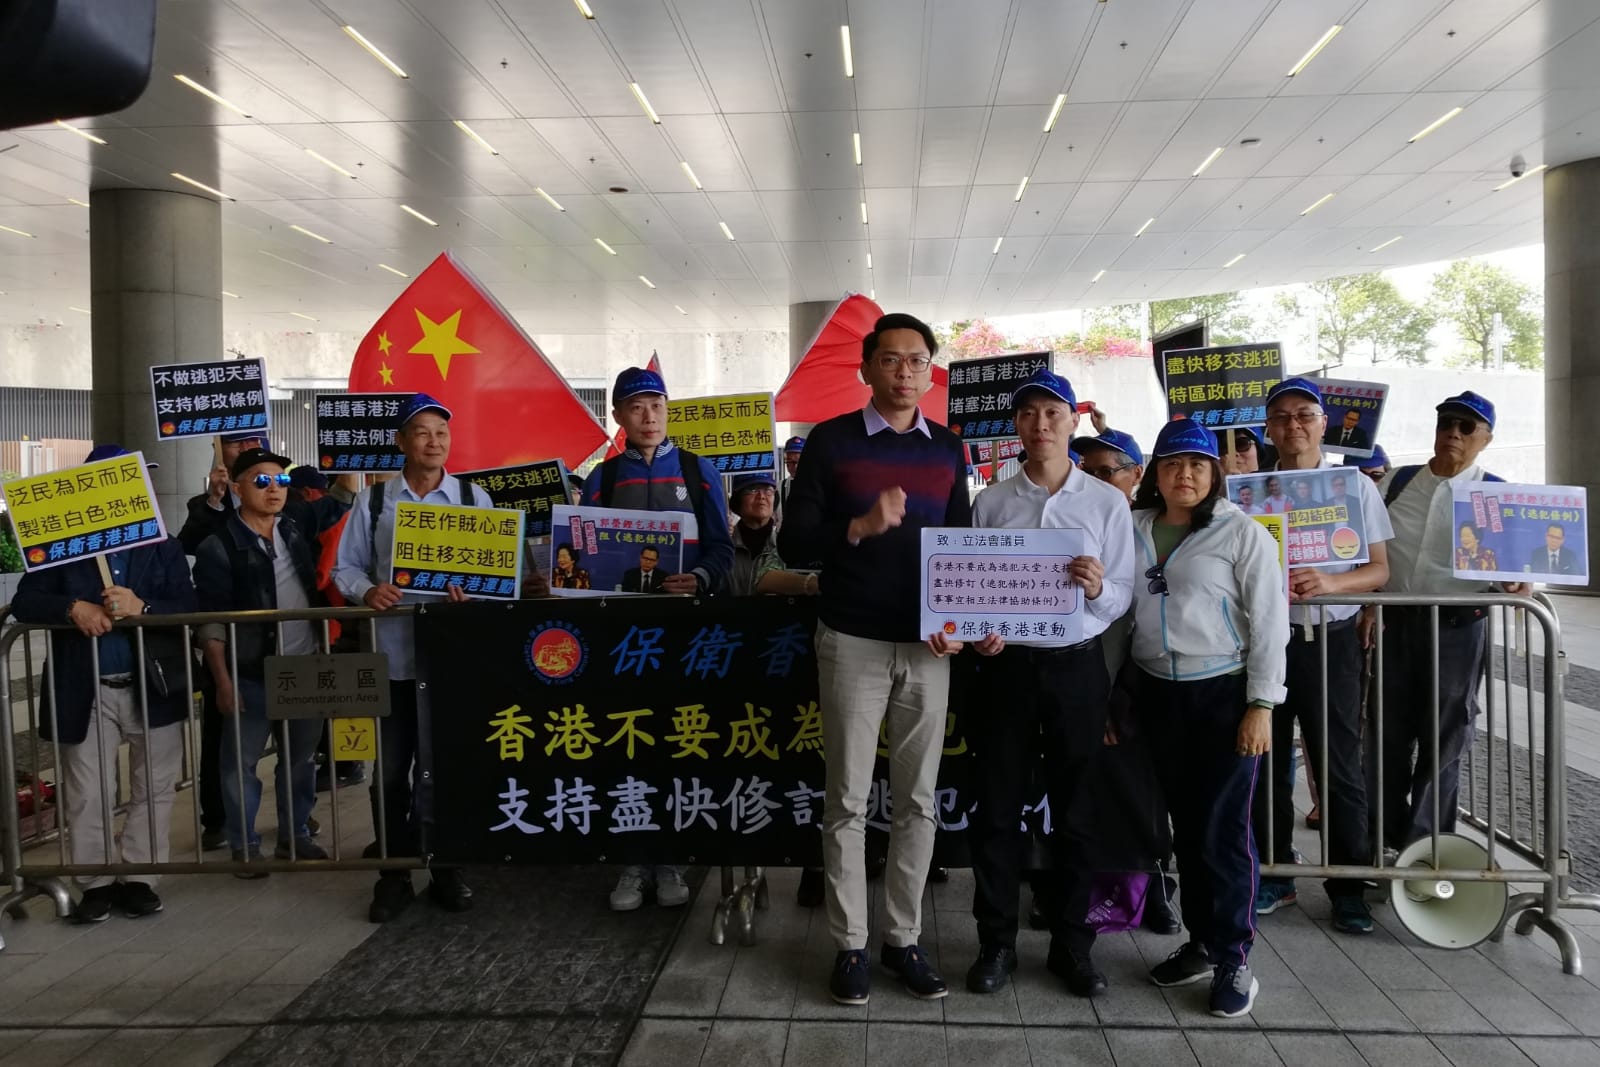 保衛香港運動 主辦「支持修改逃犯條例」遊行集會